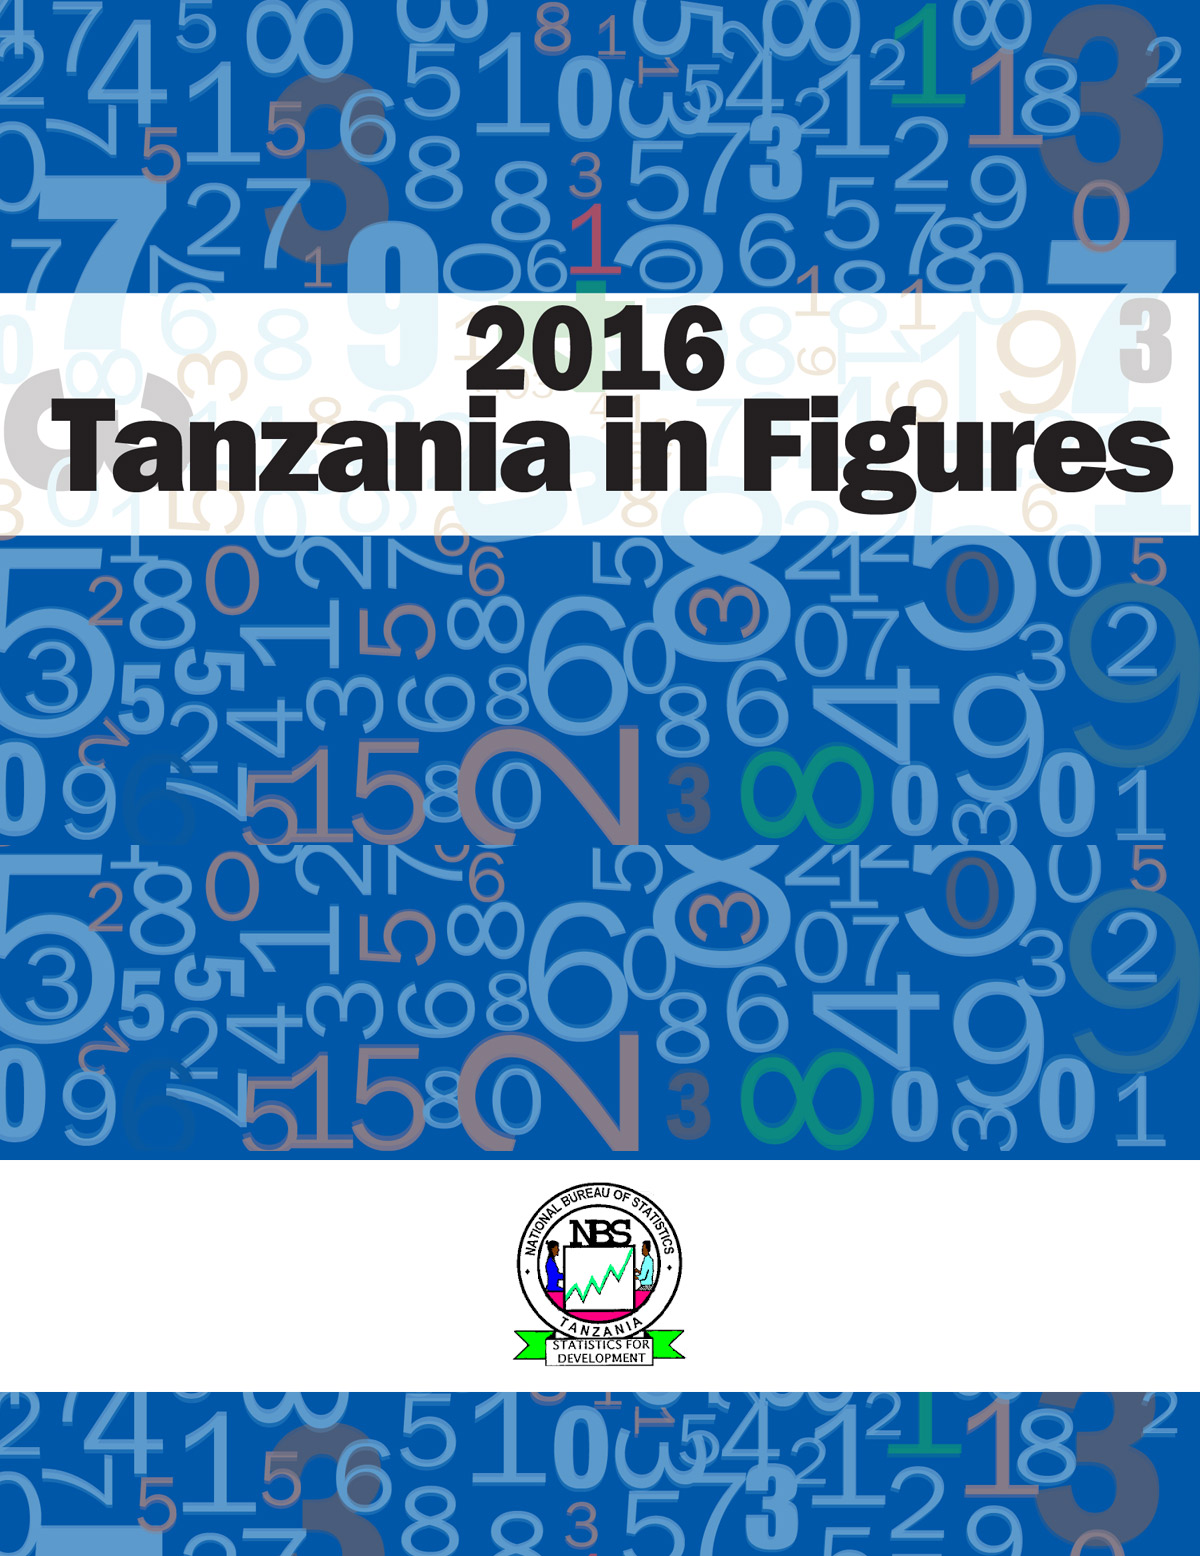 Tanzania in Figures 2016